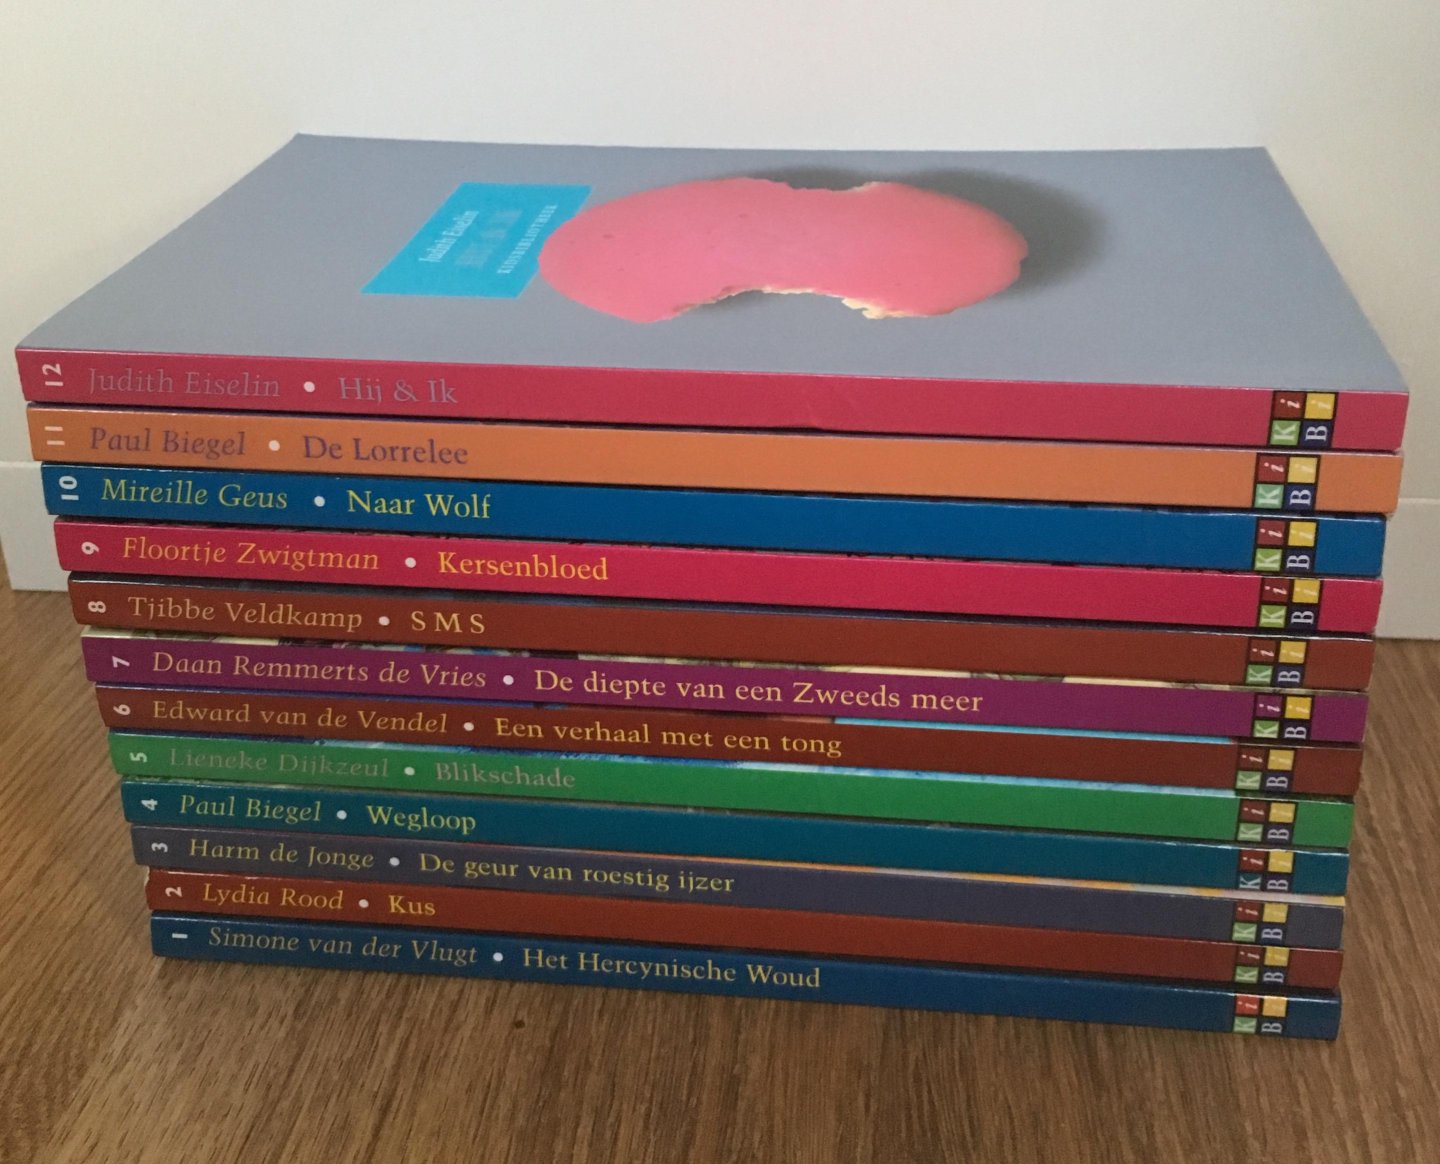 Diverse Auteurs (zie omschrijving) - 12 delen van de Kidsbibliotheek (zie titels in de omschrijving)